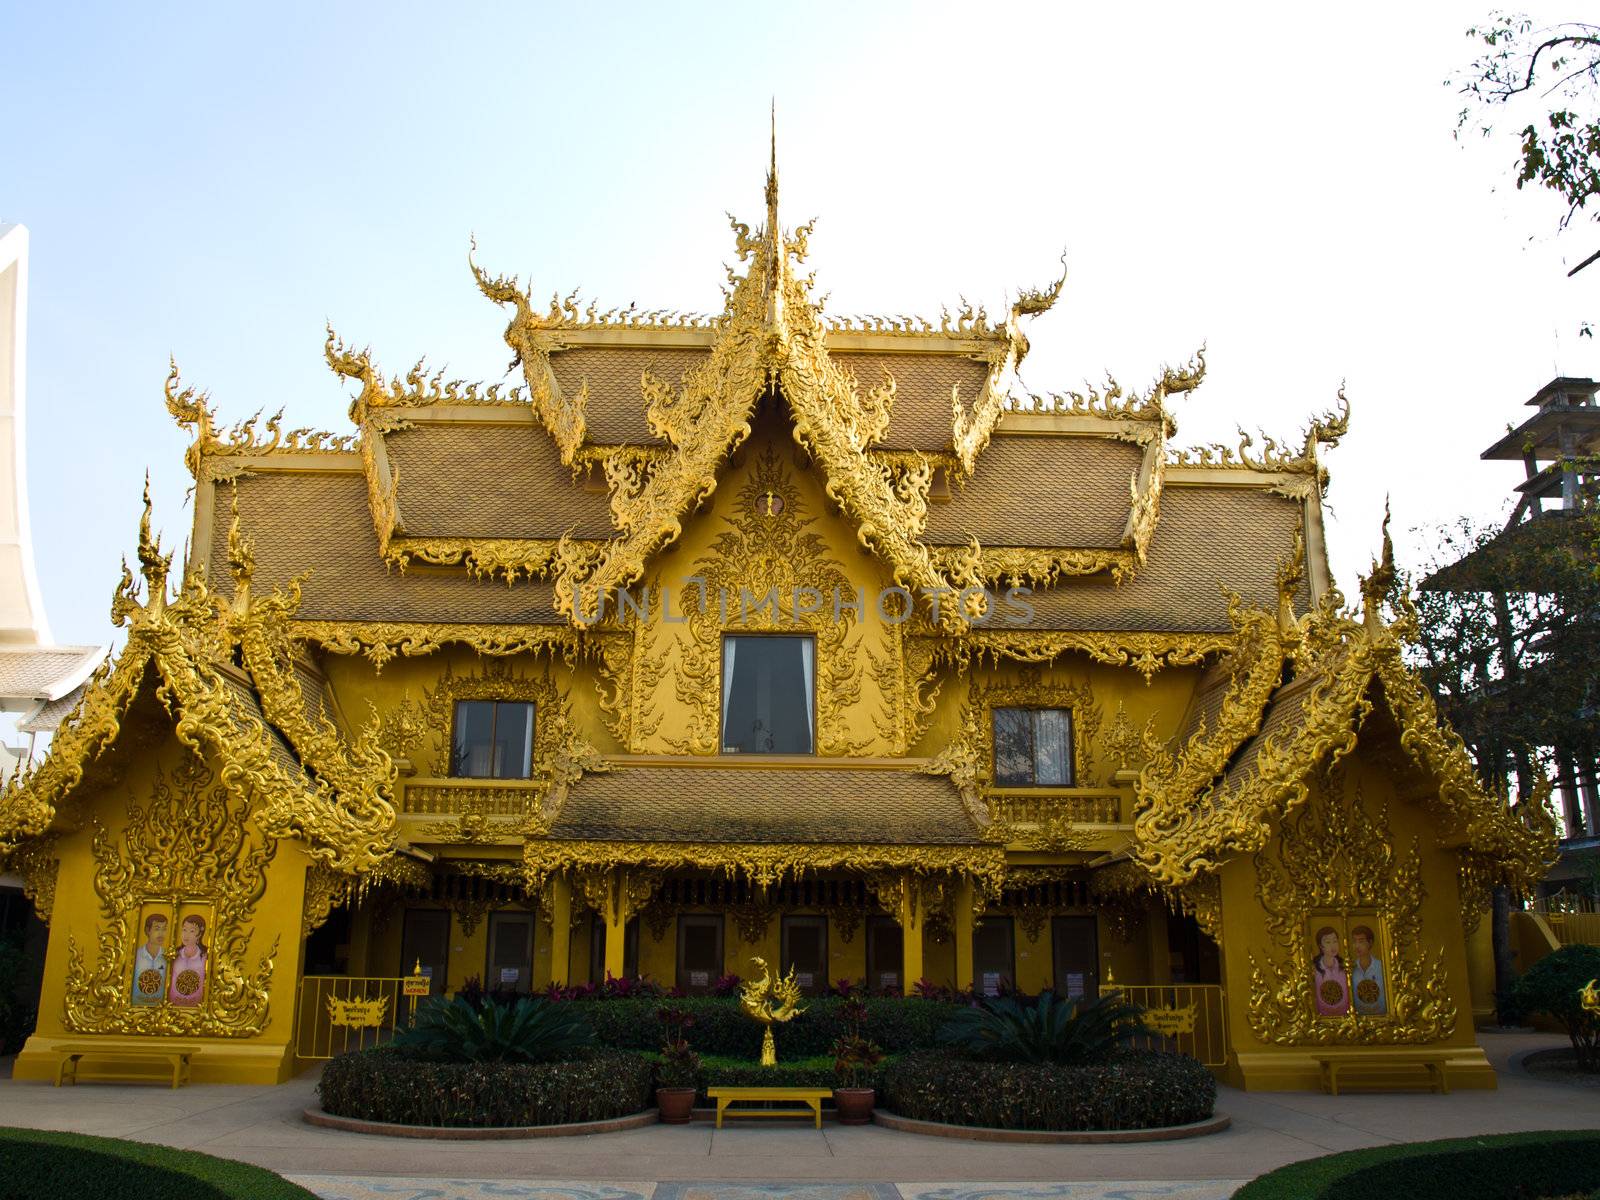 Facade of golden toilet, Wat Rong Khun at Chiang Rai, Thailand by gururugu